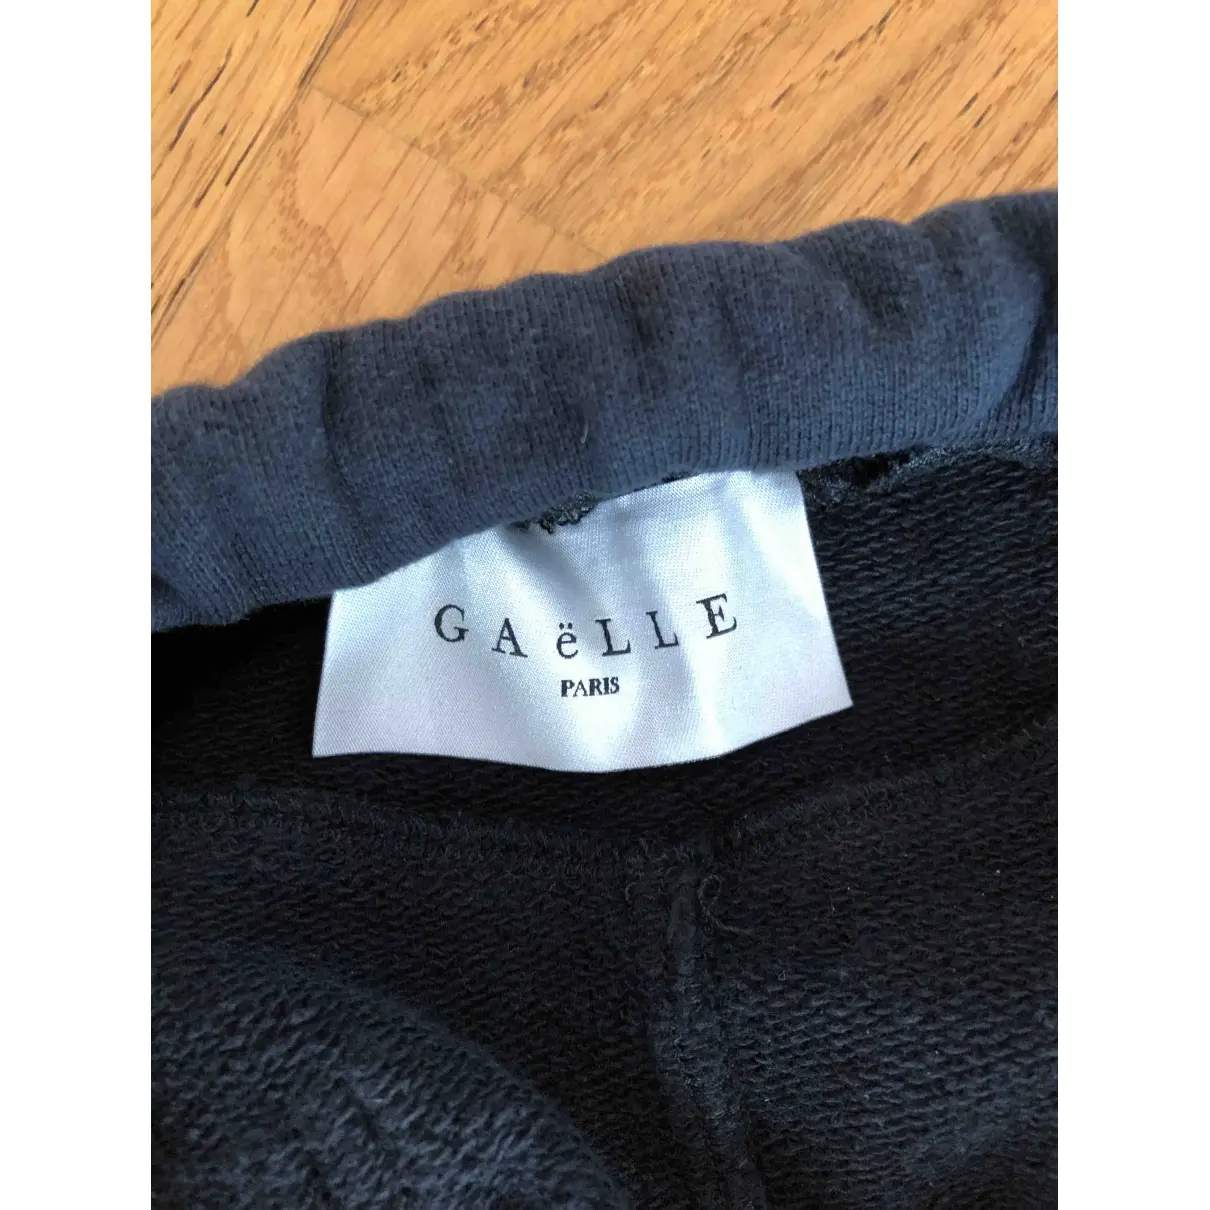 Buy Gaelle Paris Mini skirt online